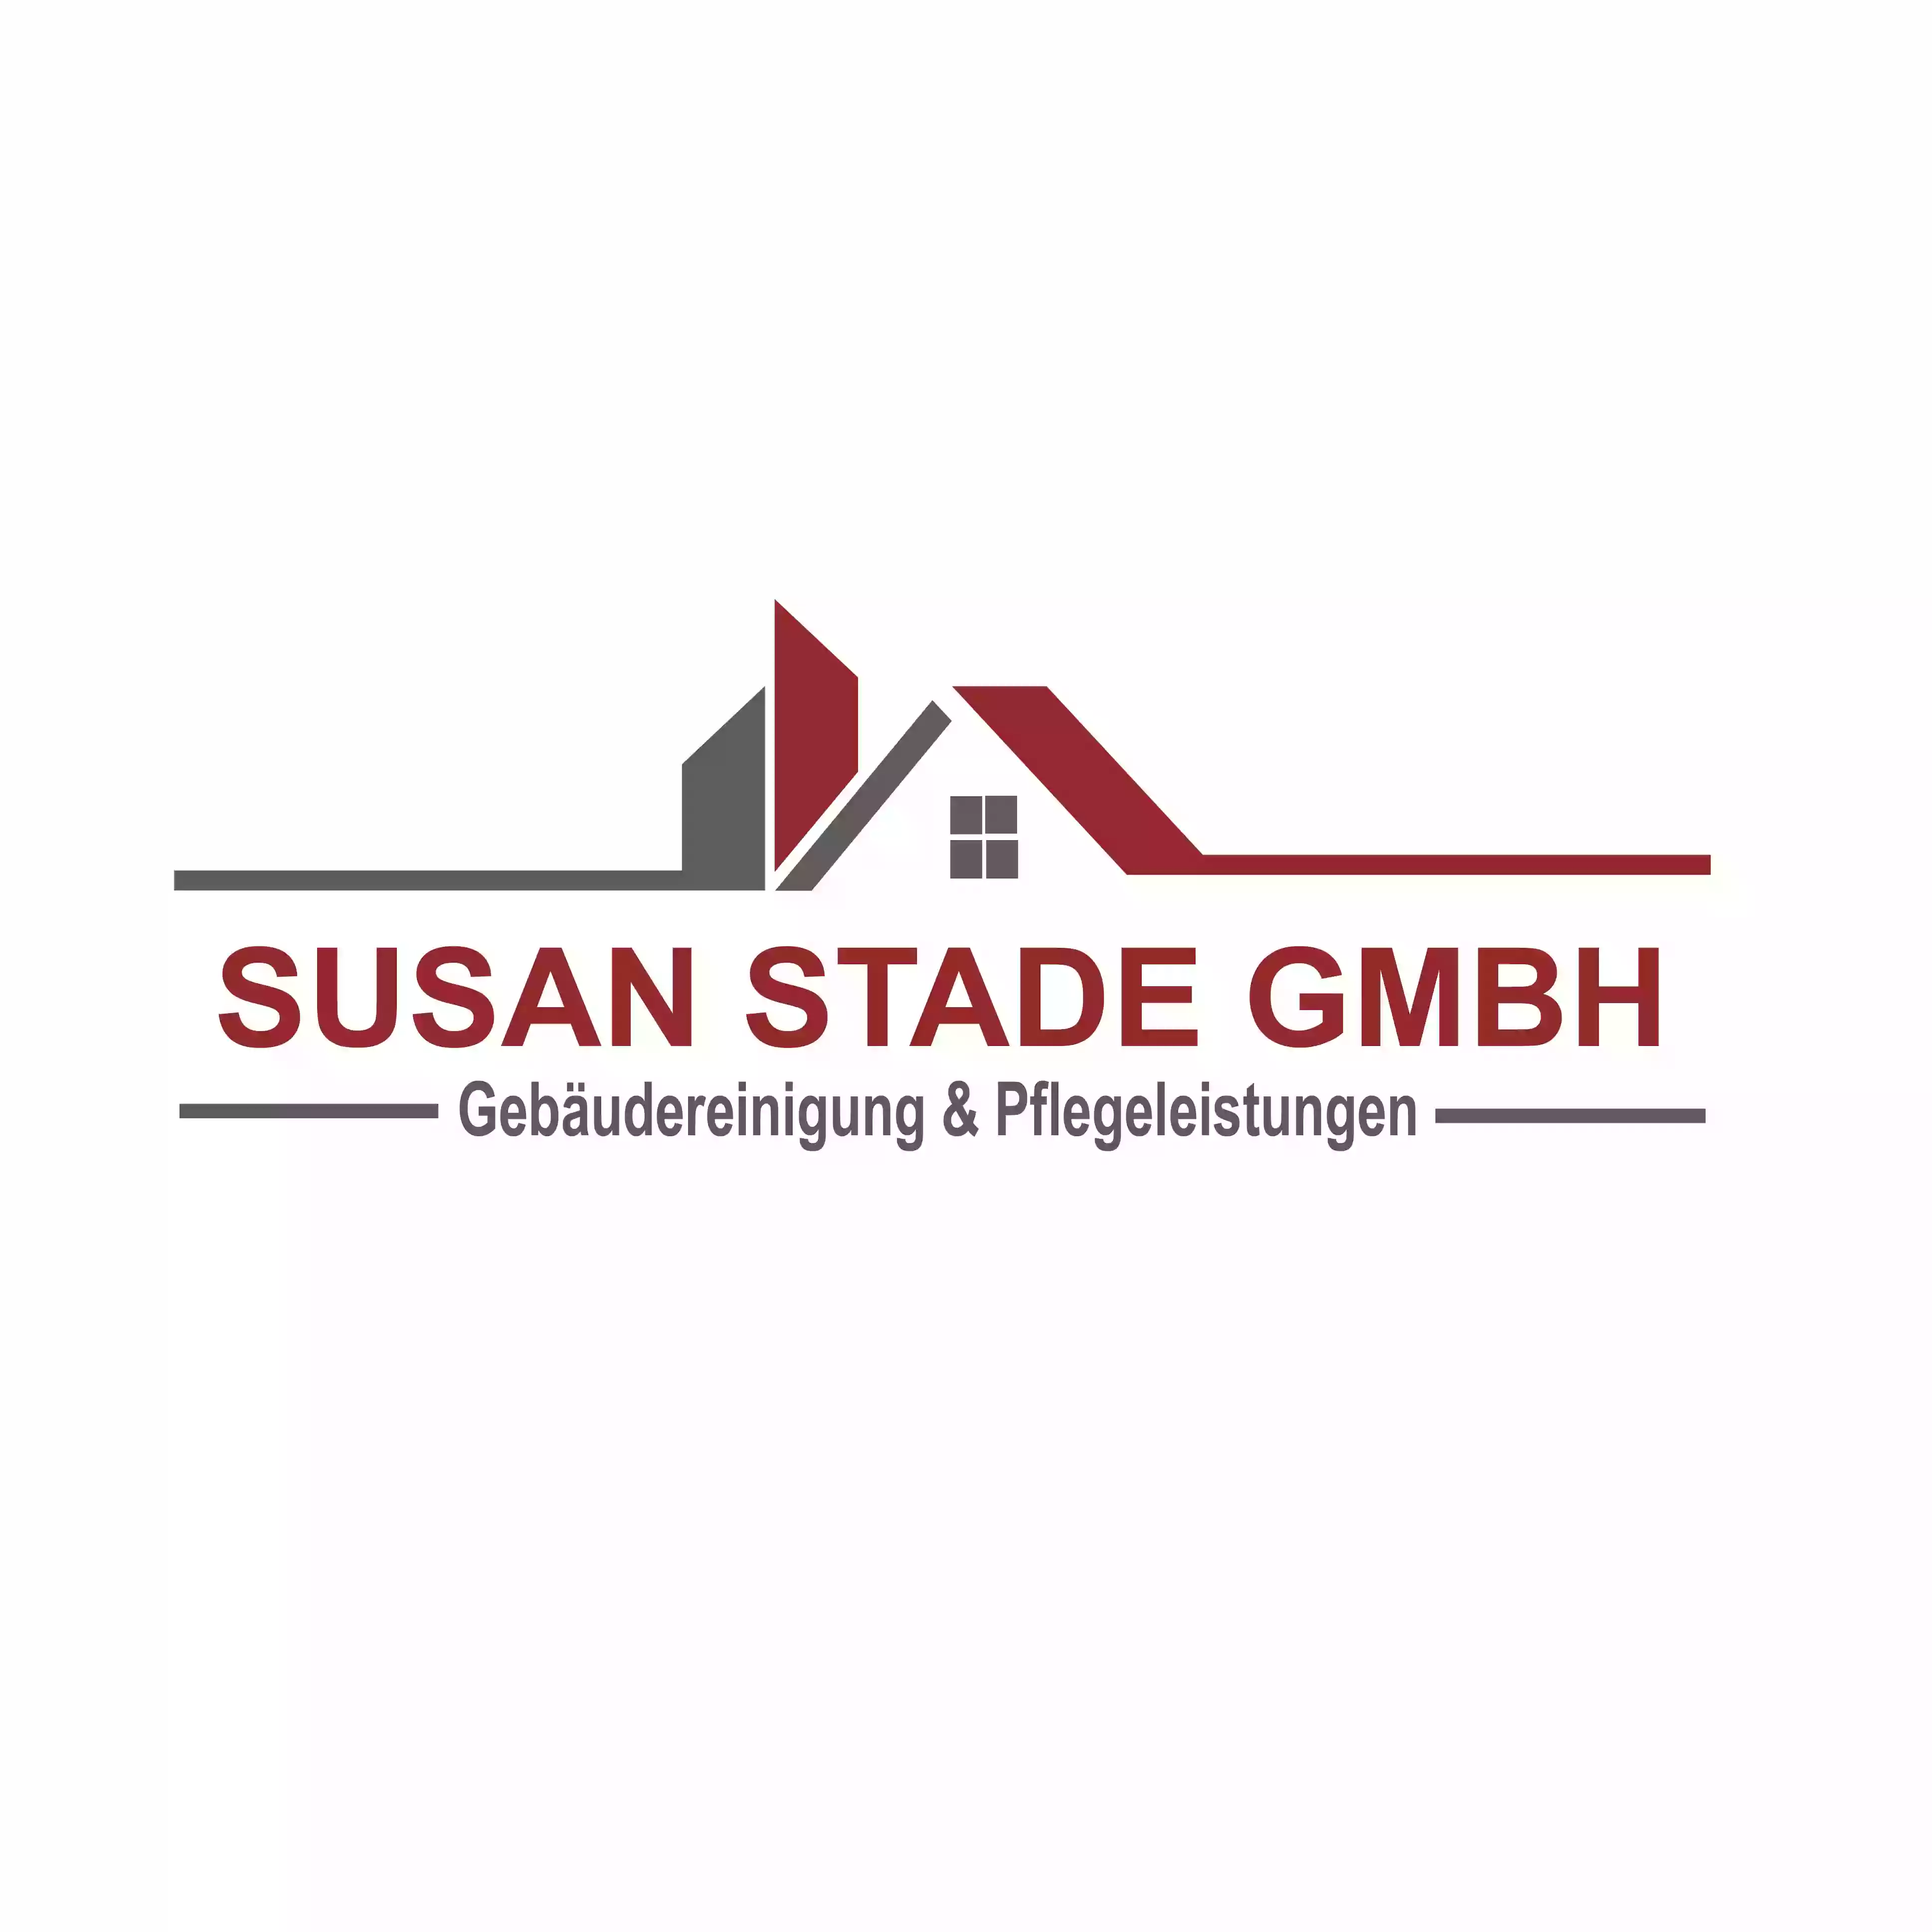 SUSAN STADE GmbH | Gebäudereinigung & Pflegeleistungen